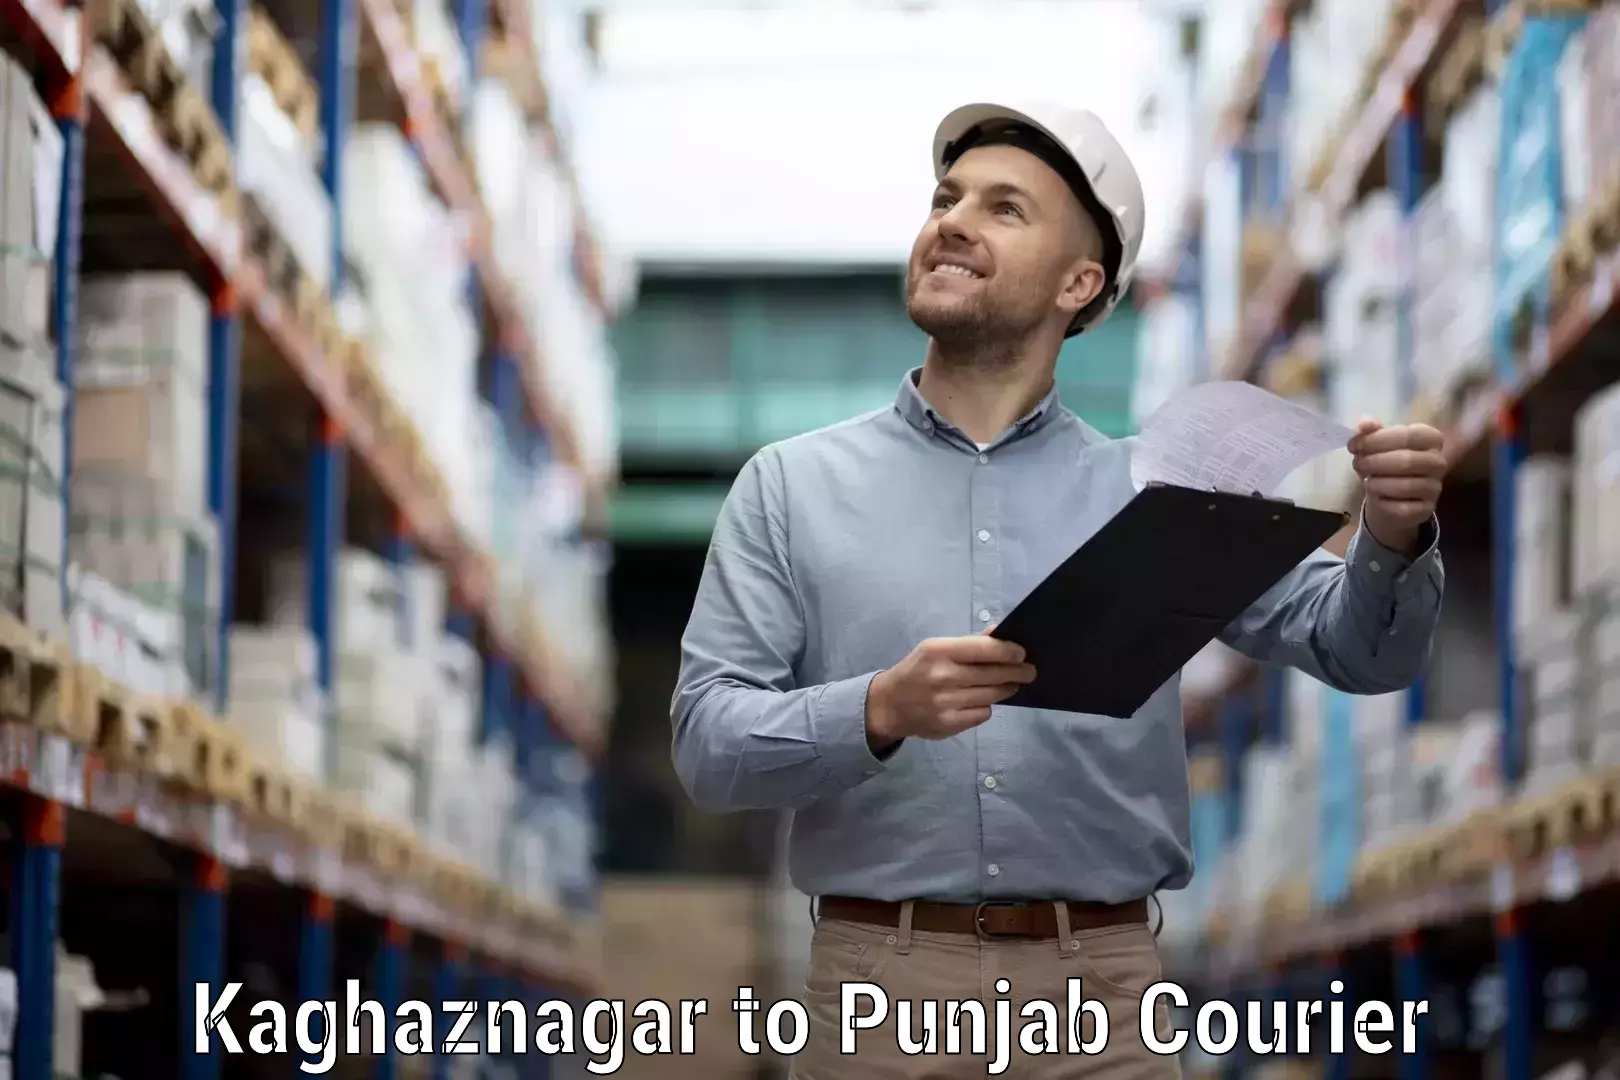 Rapid shipping services Kaghaznagar to Punjab